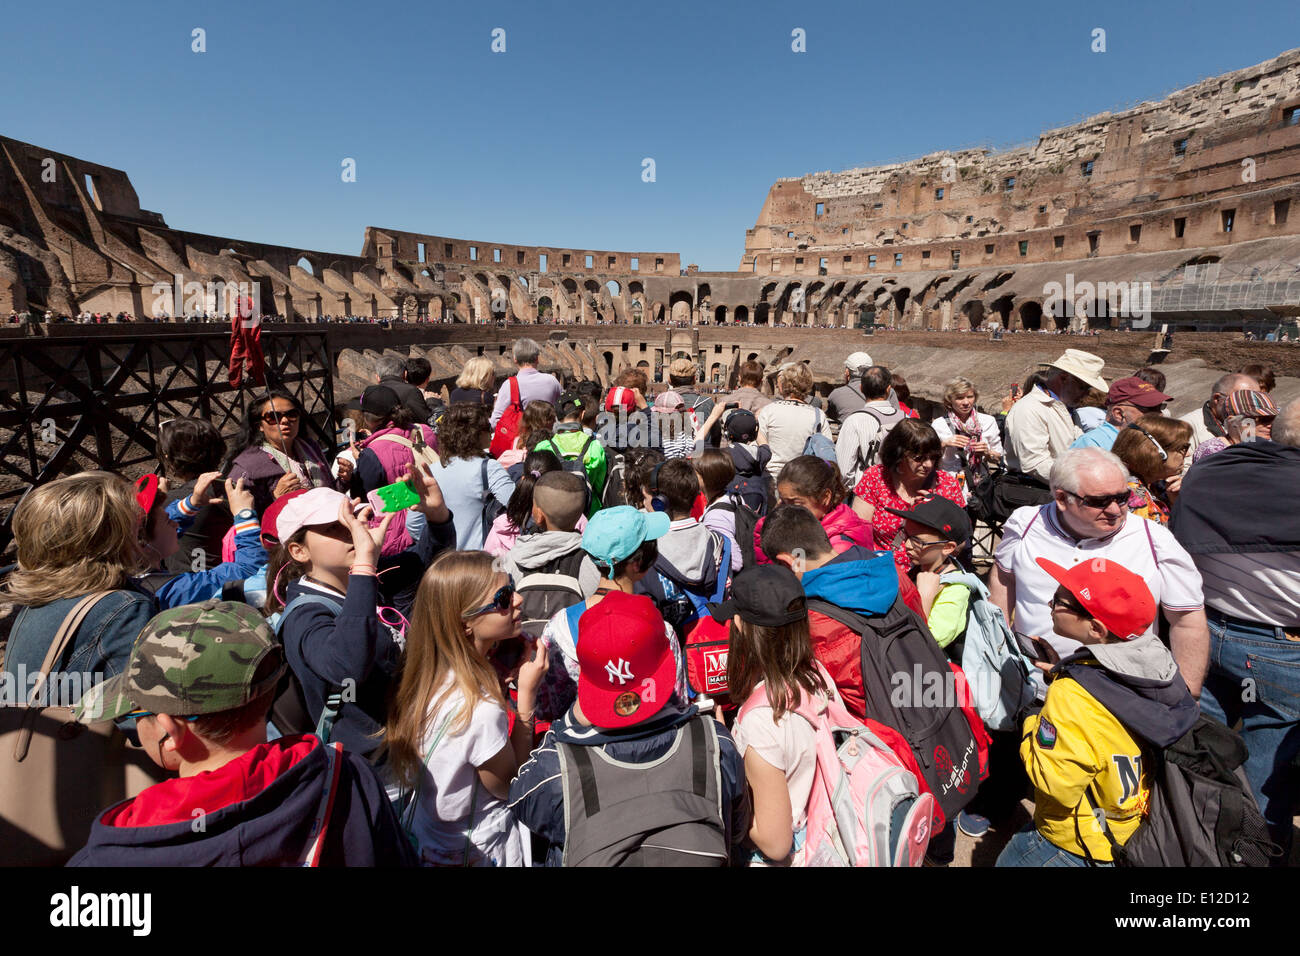 El Coliseo, Roma interior, también conocido como el anfiteatro Flavio, antiguo monumento romano siglo I A.C. Roma Italia Europa Foto de stock